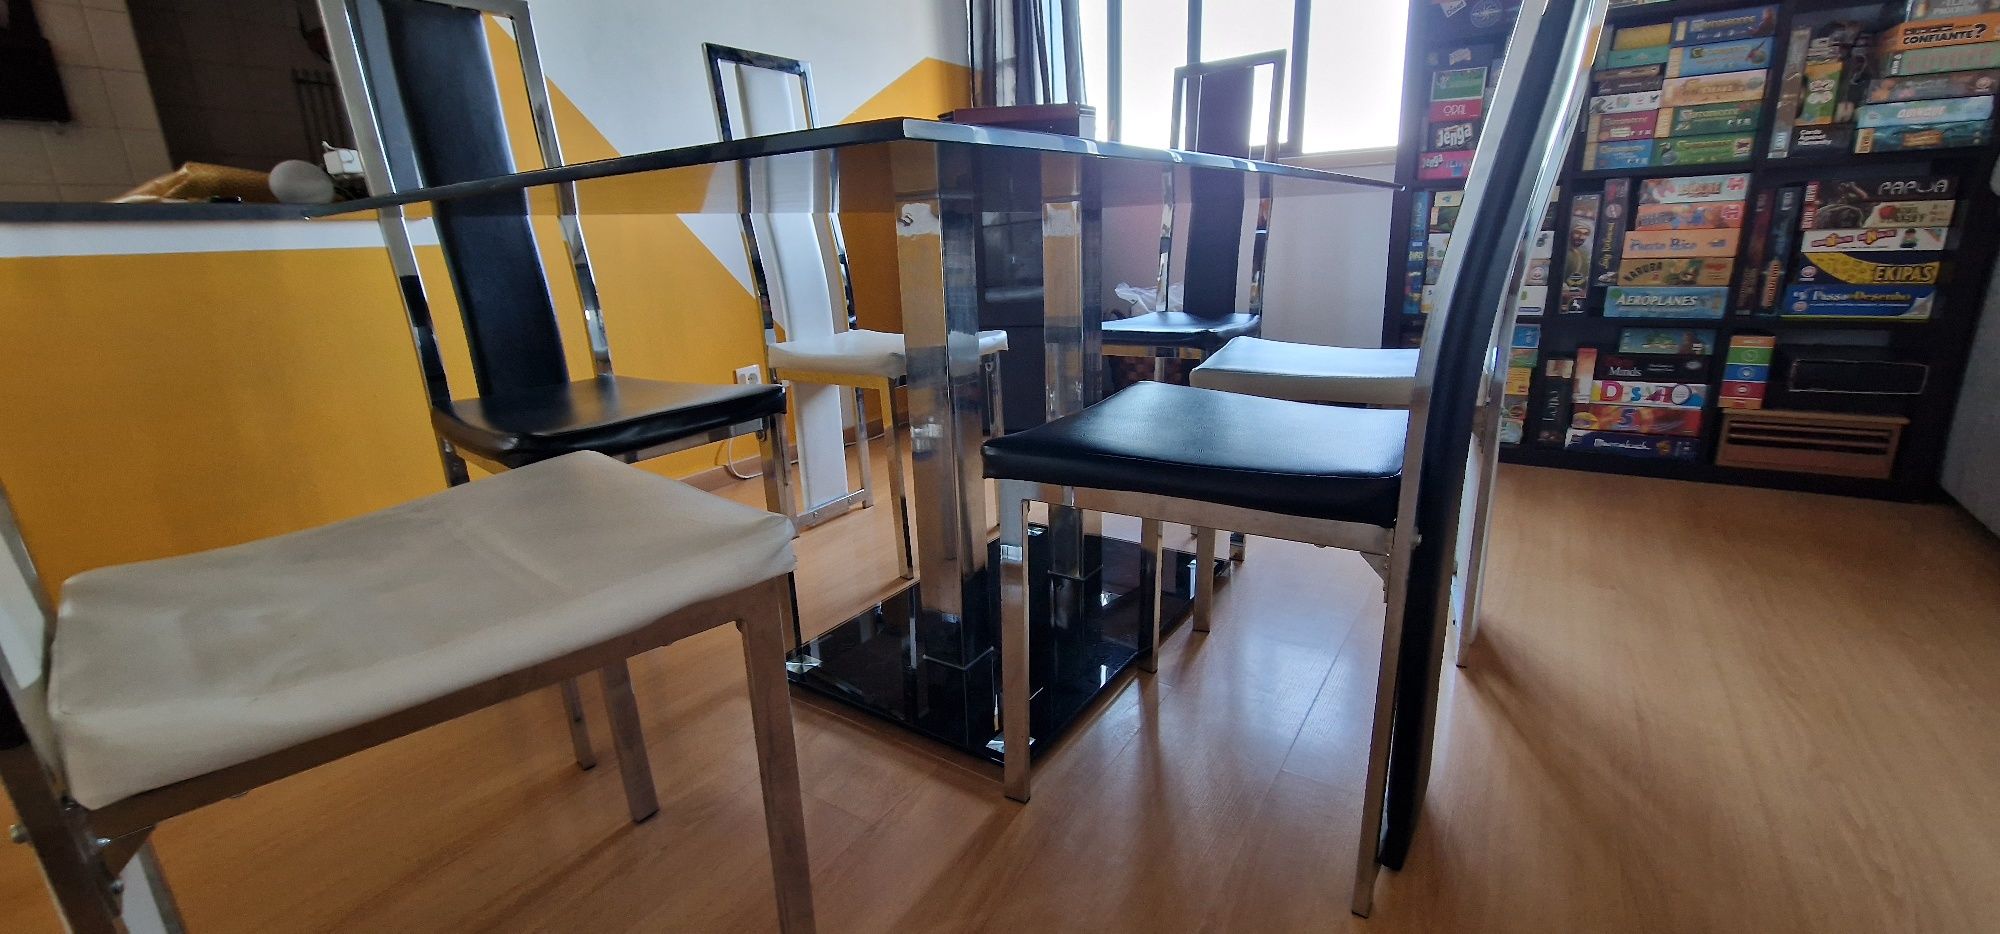 Mesa de jantar em Vidro temperado com 6 cadeiras